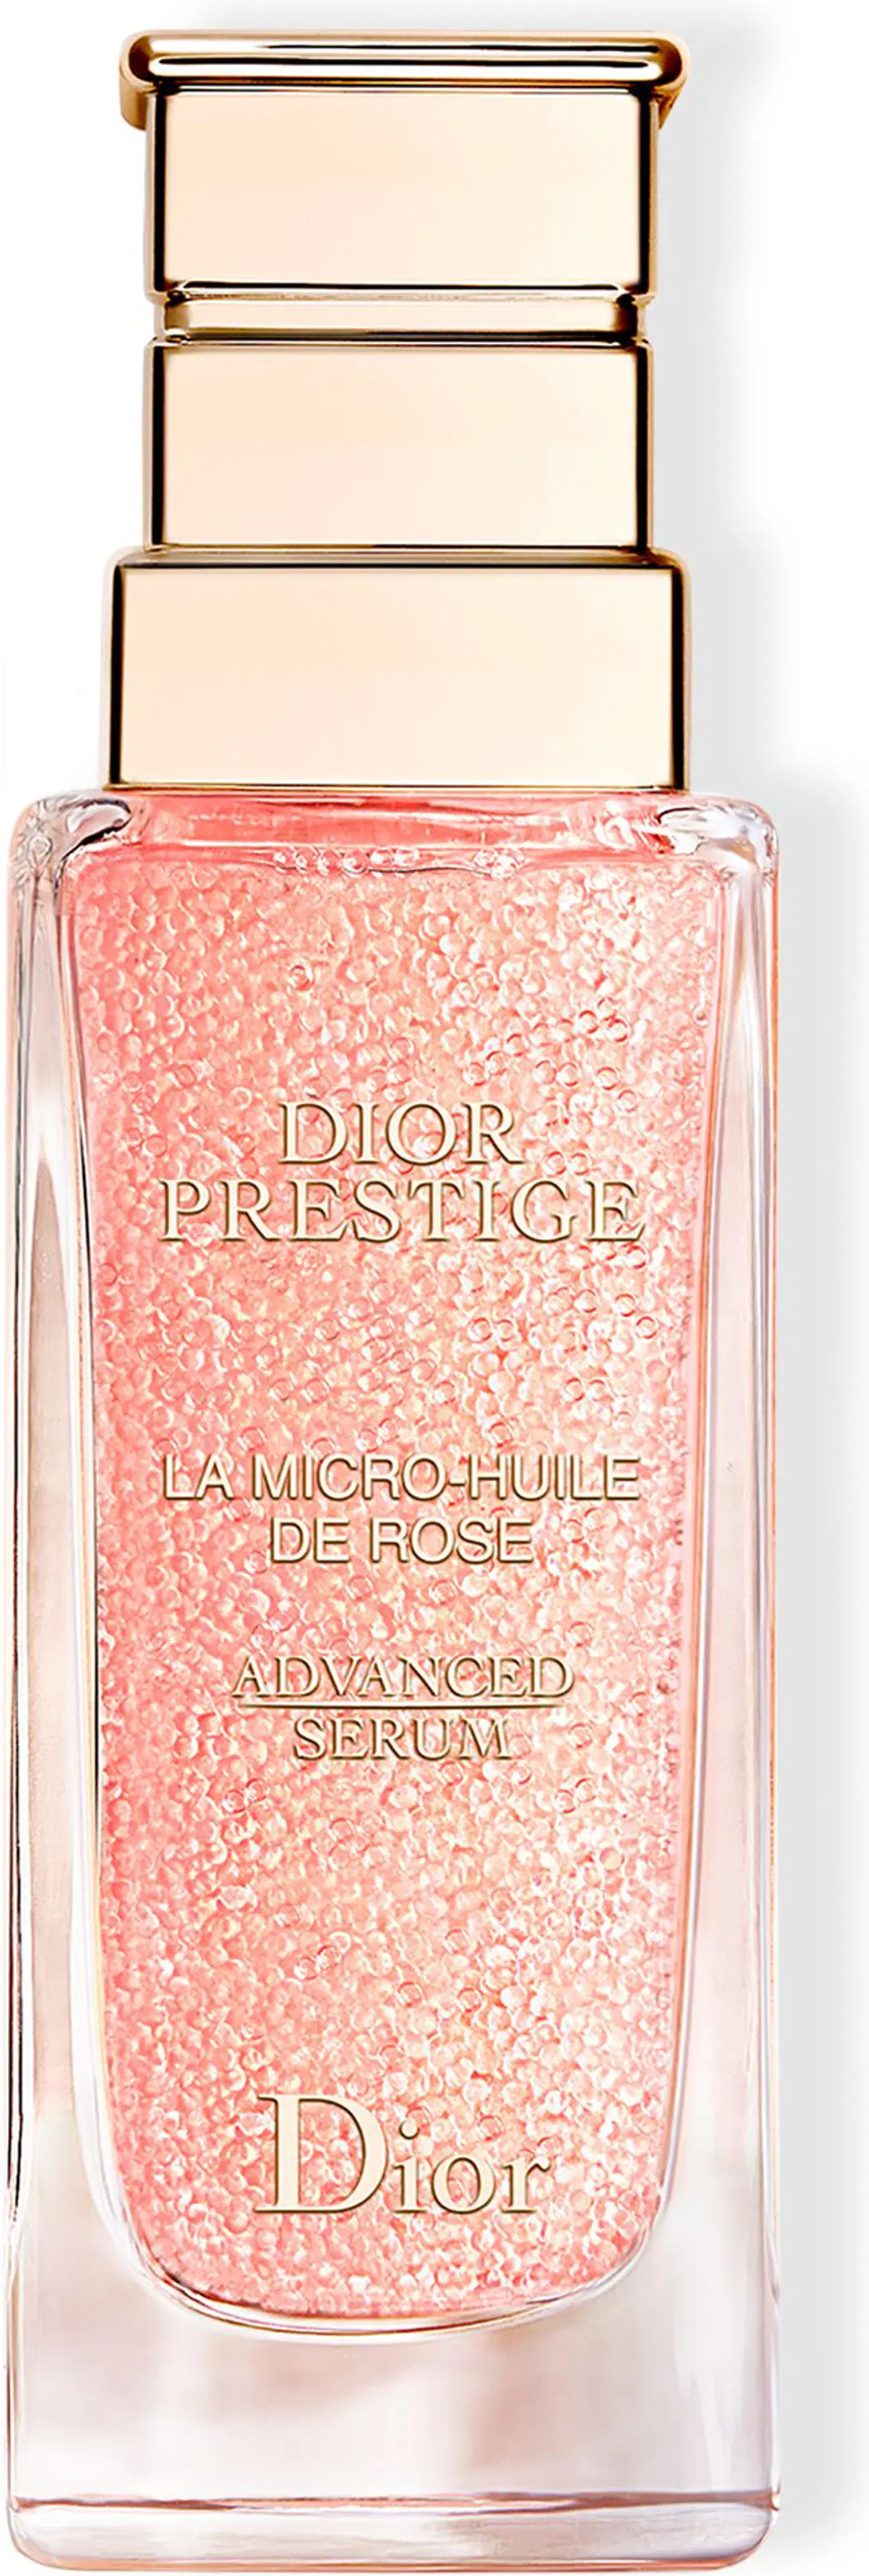 DIOR Prestige Micro-Huile De Rose Advanced Face Serum 50 ml